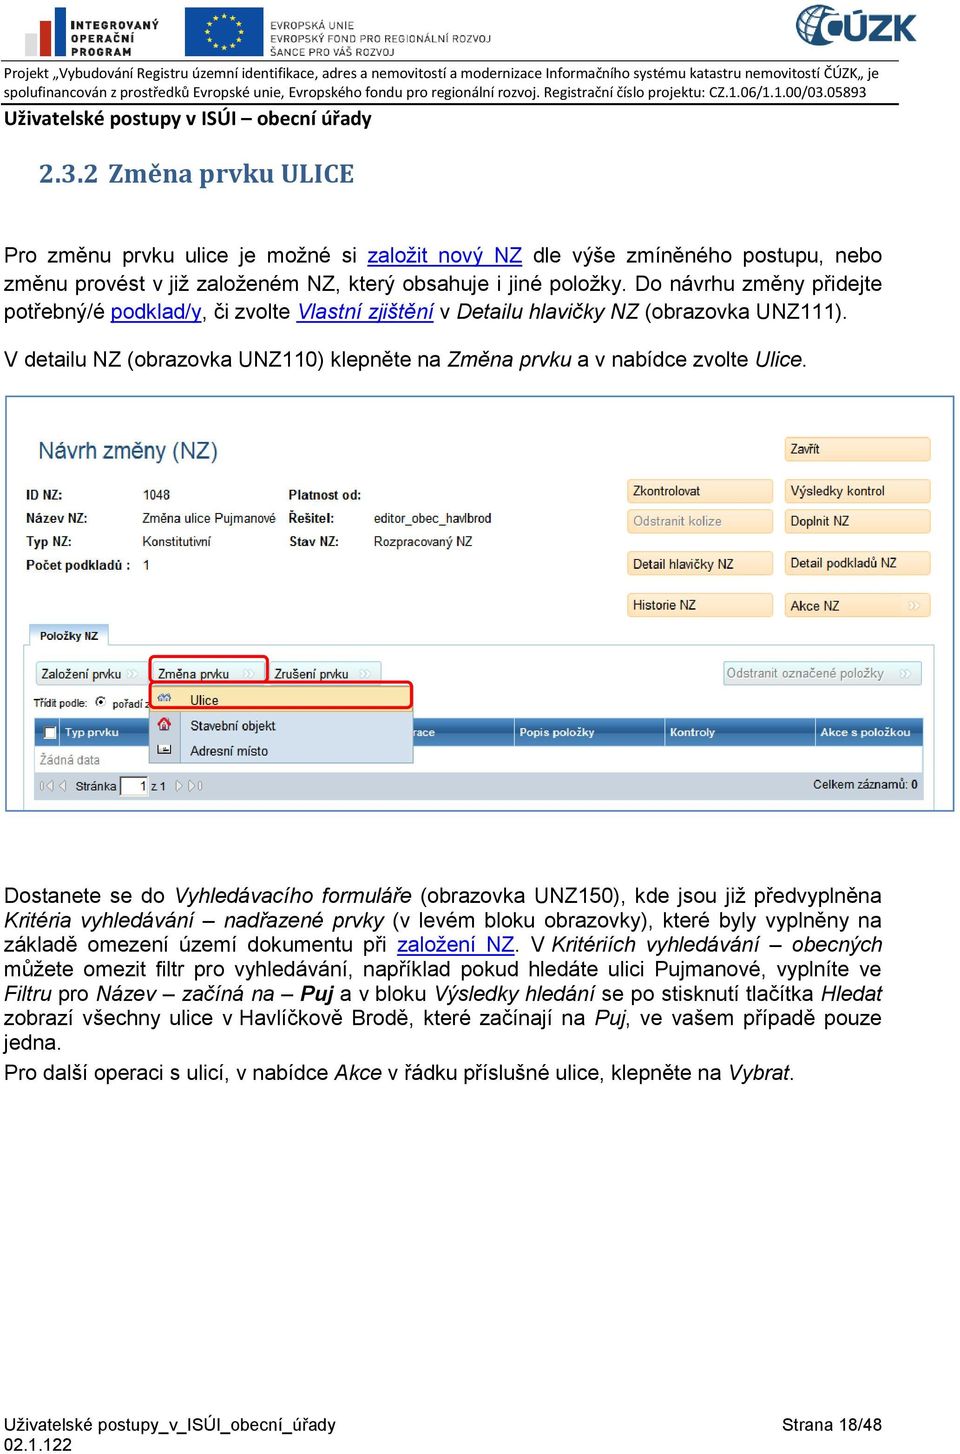 Dostanete se do Vyhledávacího formuláře (obrazovka UNZ150), kde jsou již předvyplněna Kritéria vyhledávání nadřazené prvky (v levém bloku obrazovky), které byly vyplněny na základě omezení území